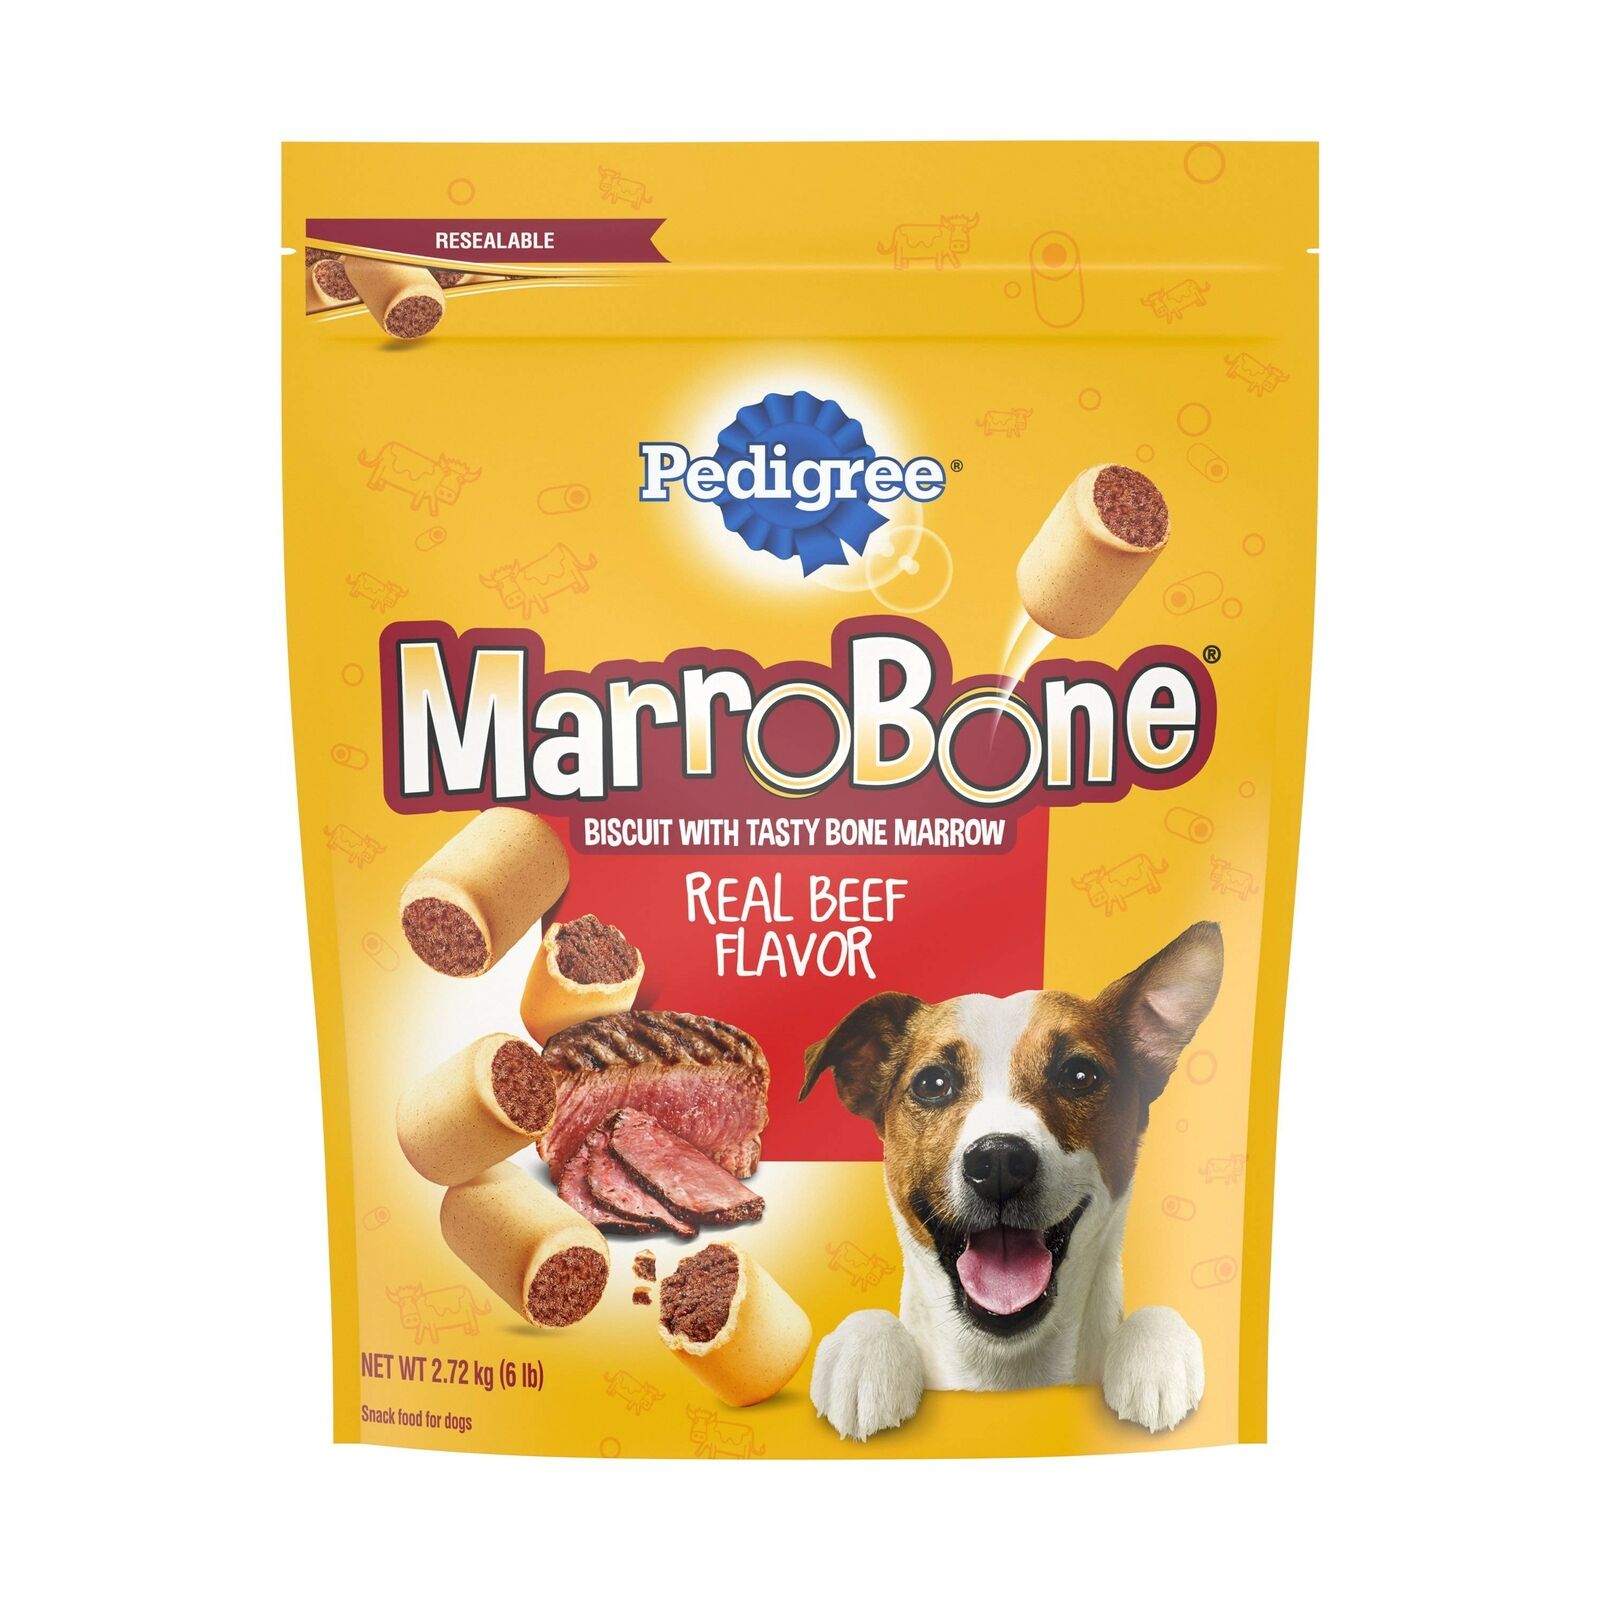 Pedigree Marrobone Meaty Dogs Treats Biscuits Bone Marrow Beef Flavor 6 Lbs 1Pck